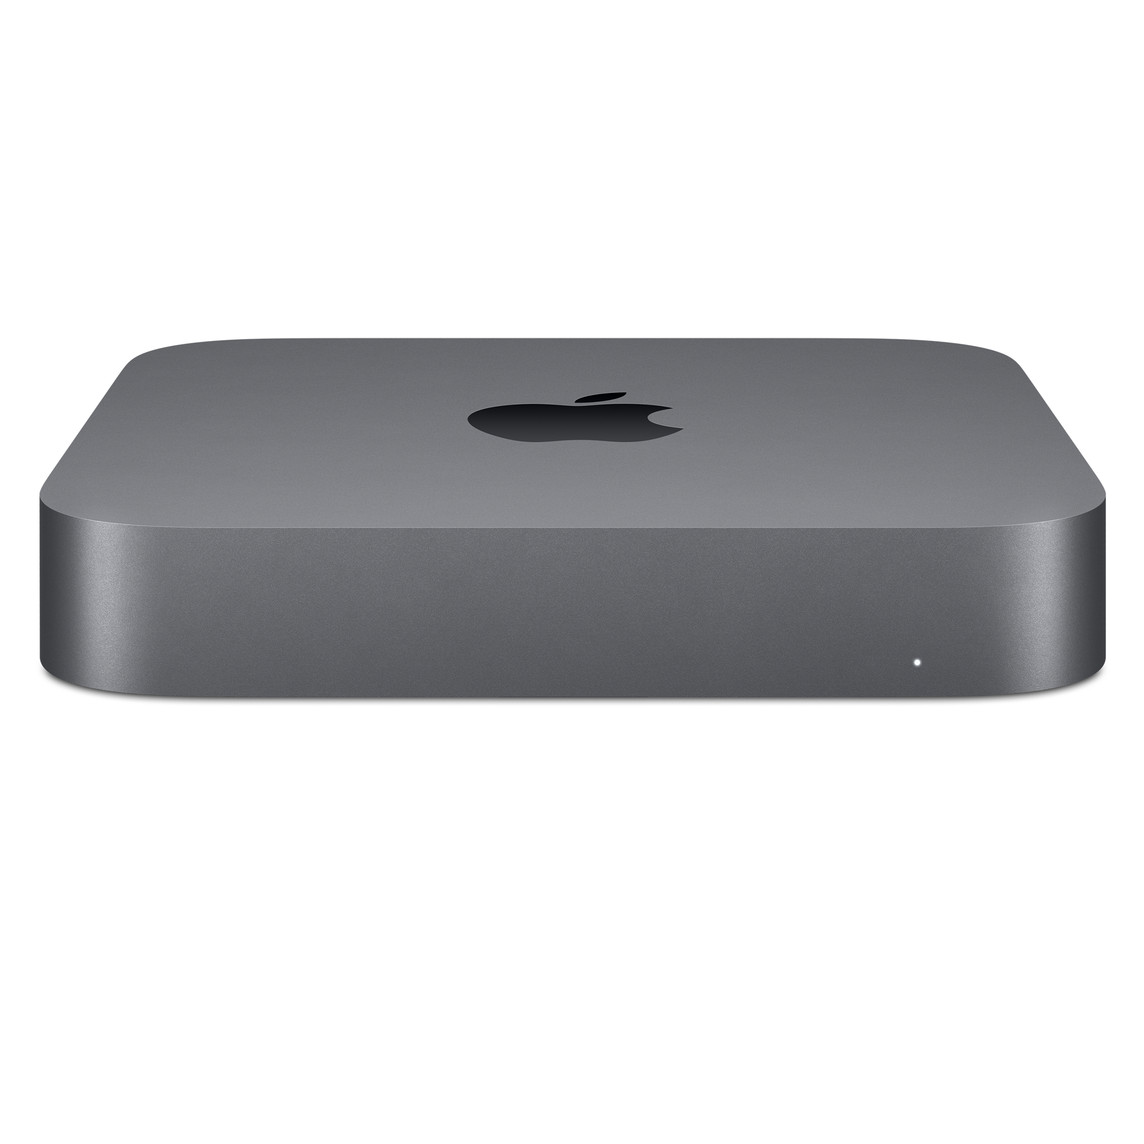 Mac mini 的正面，展示頂部的 Apple 標誌。